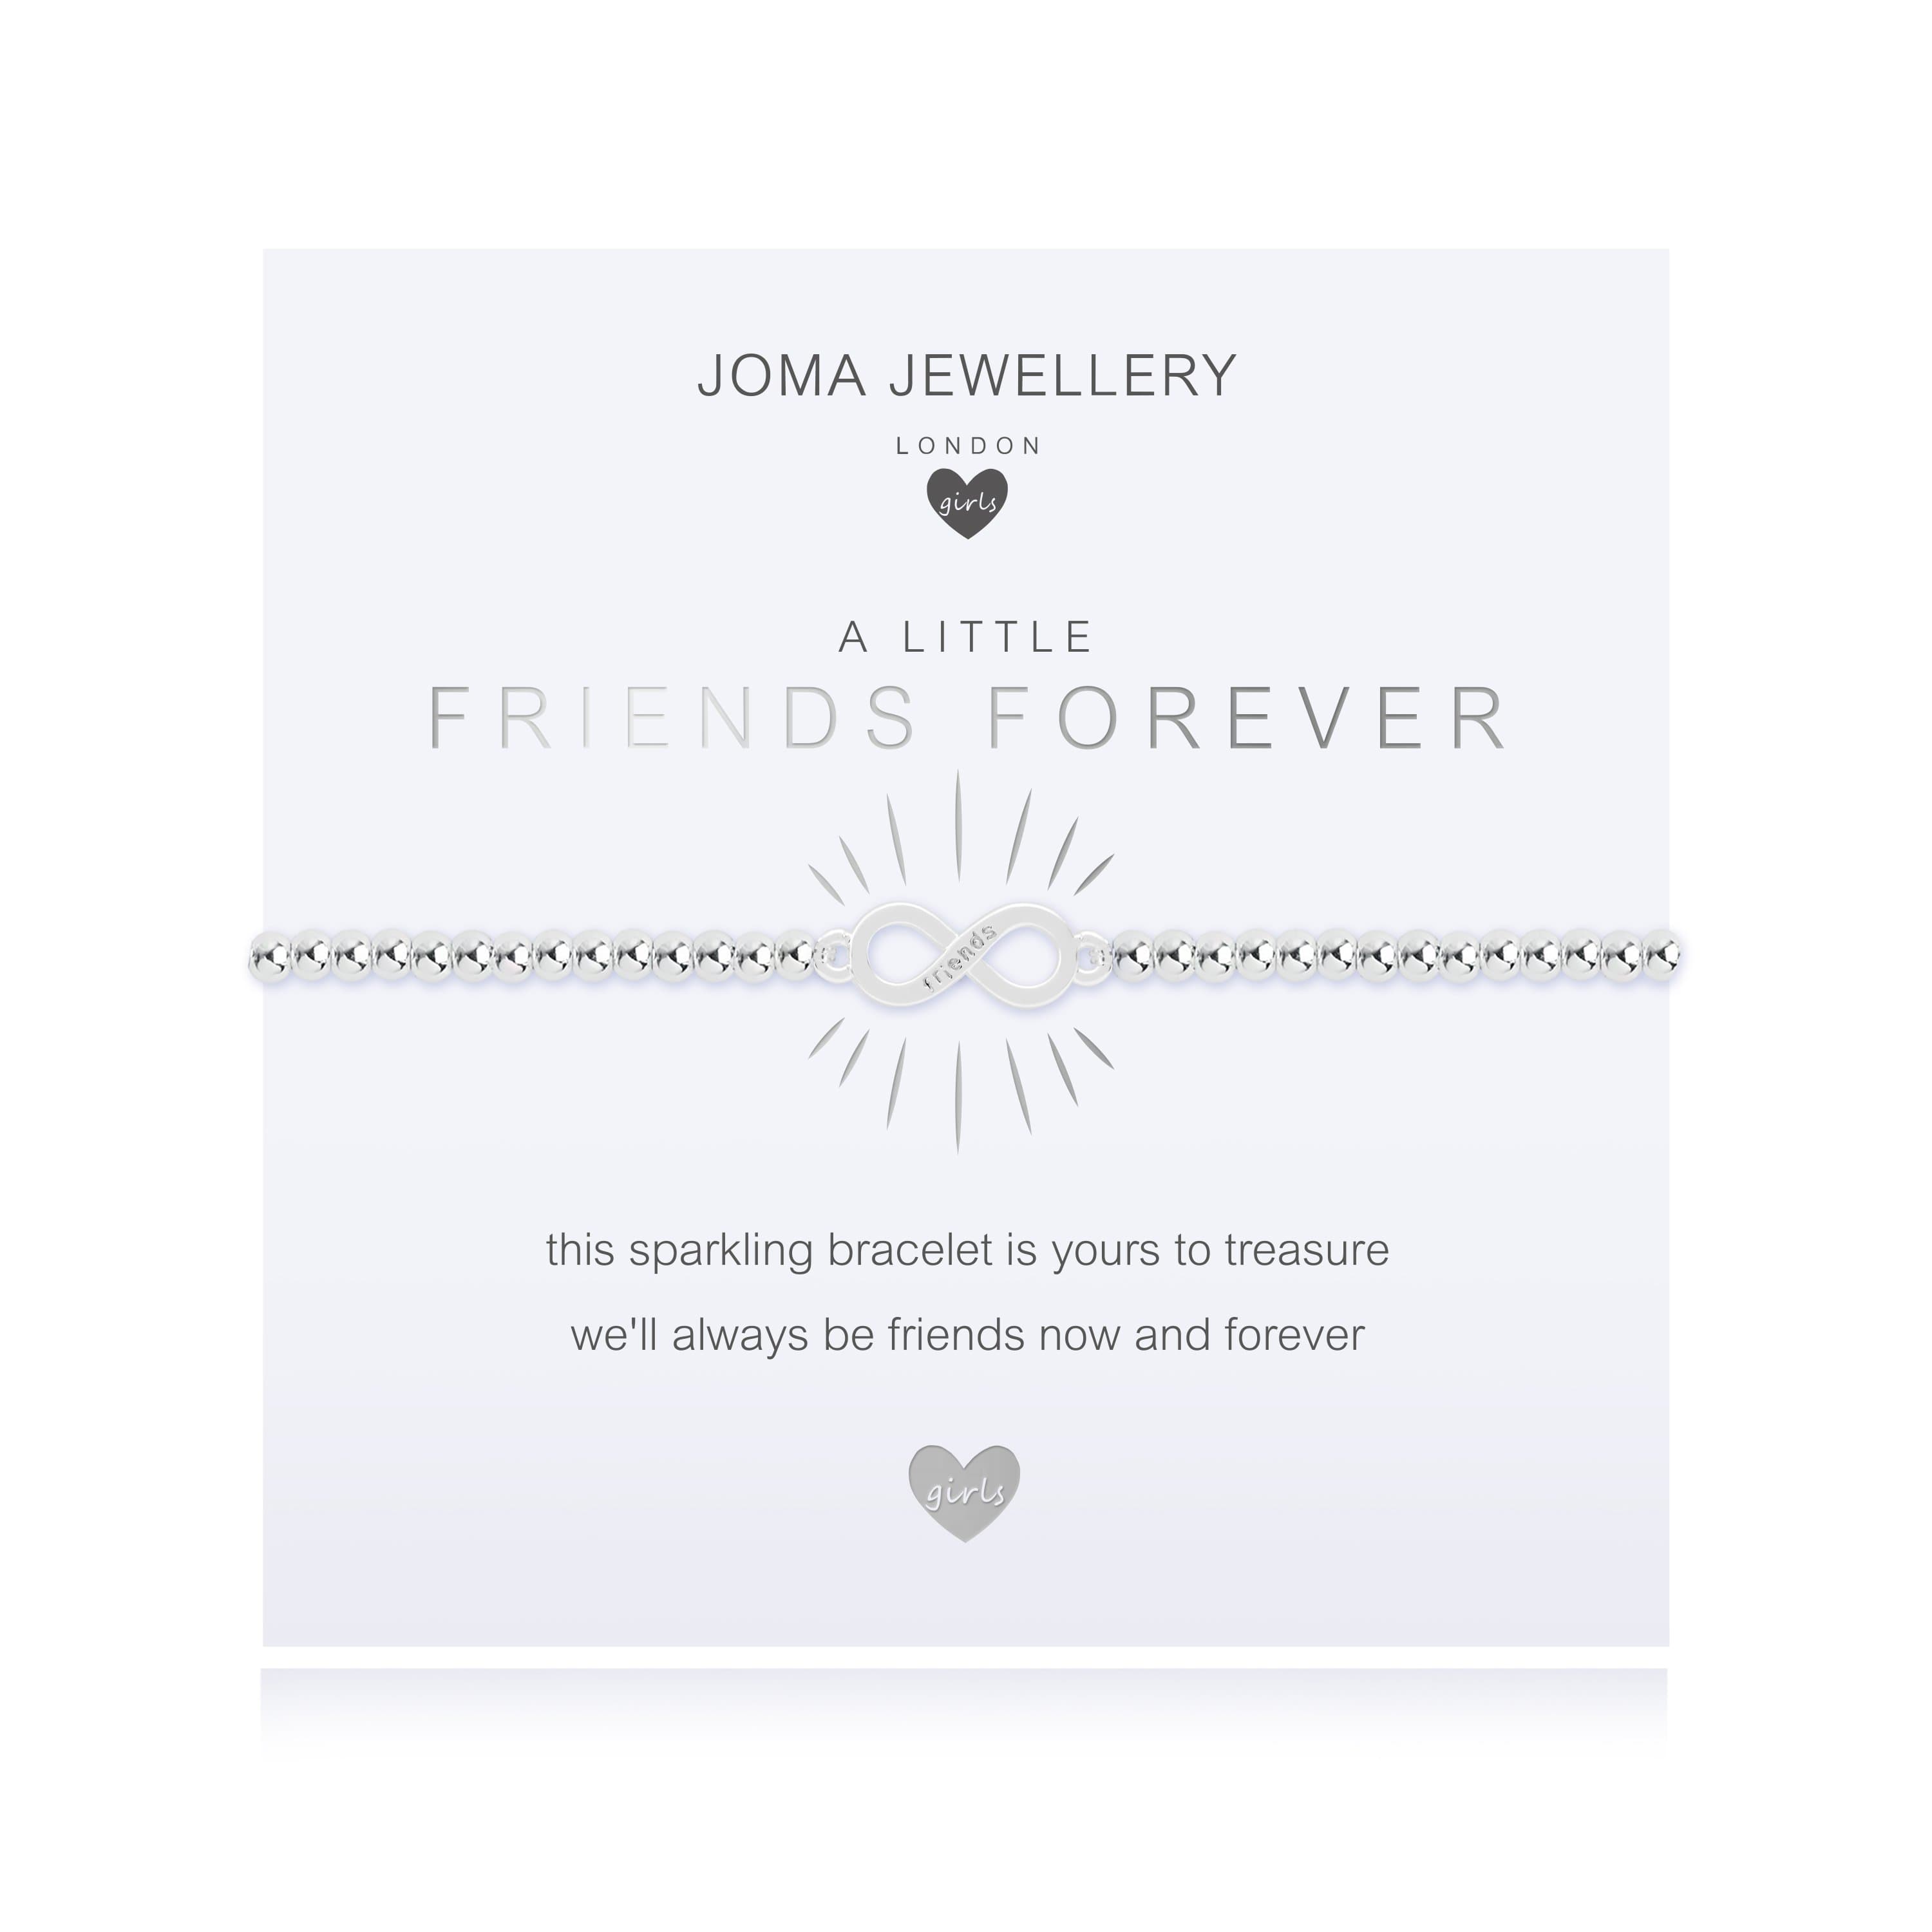 Joma Jewellery Childrens Bracelet Joma Jewellery Childrens Bracelet - A Little Friends Forever